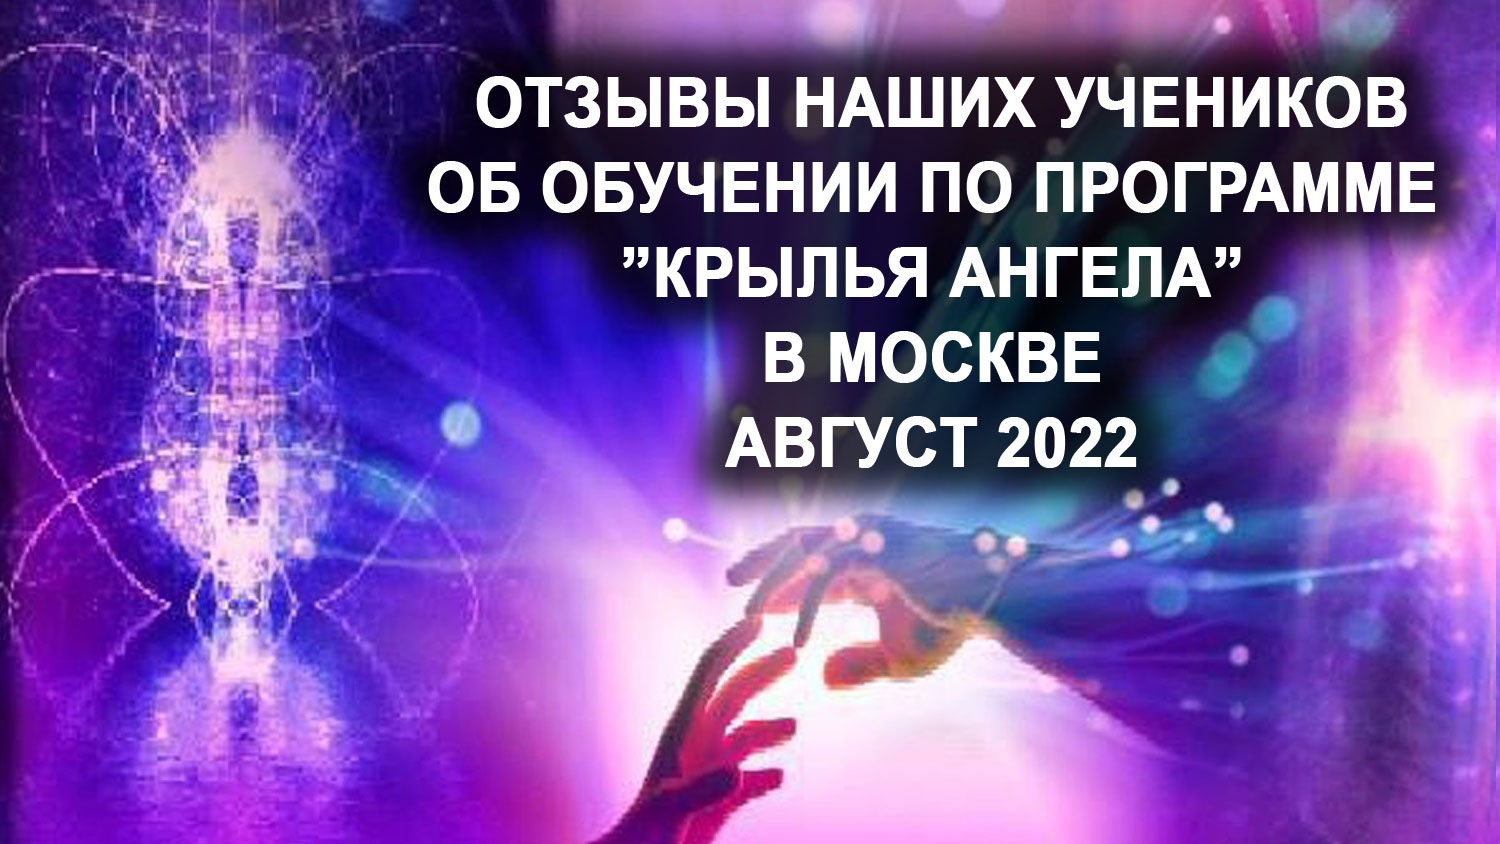 Отзывы наших учеников об обучении по программе трансформации "Крылья Ангела".  Москва, август 2022г.